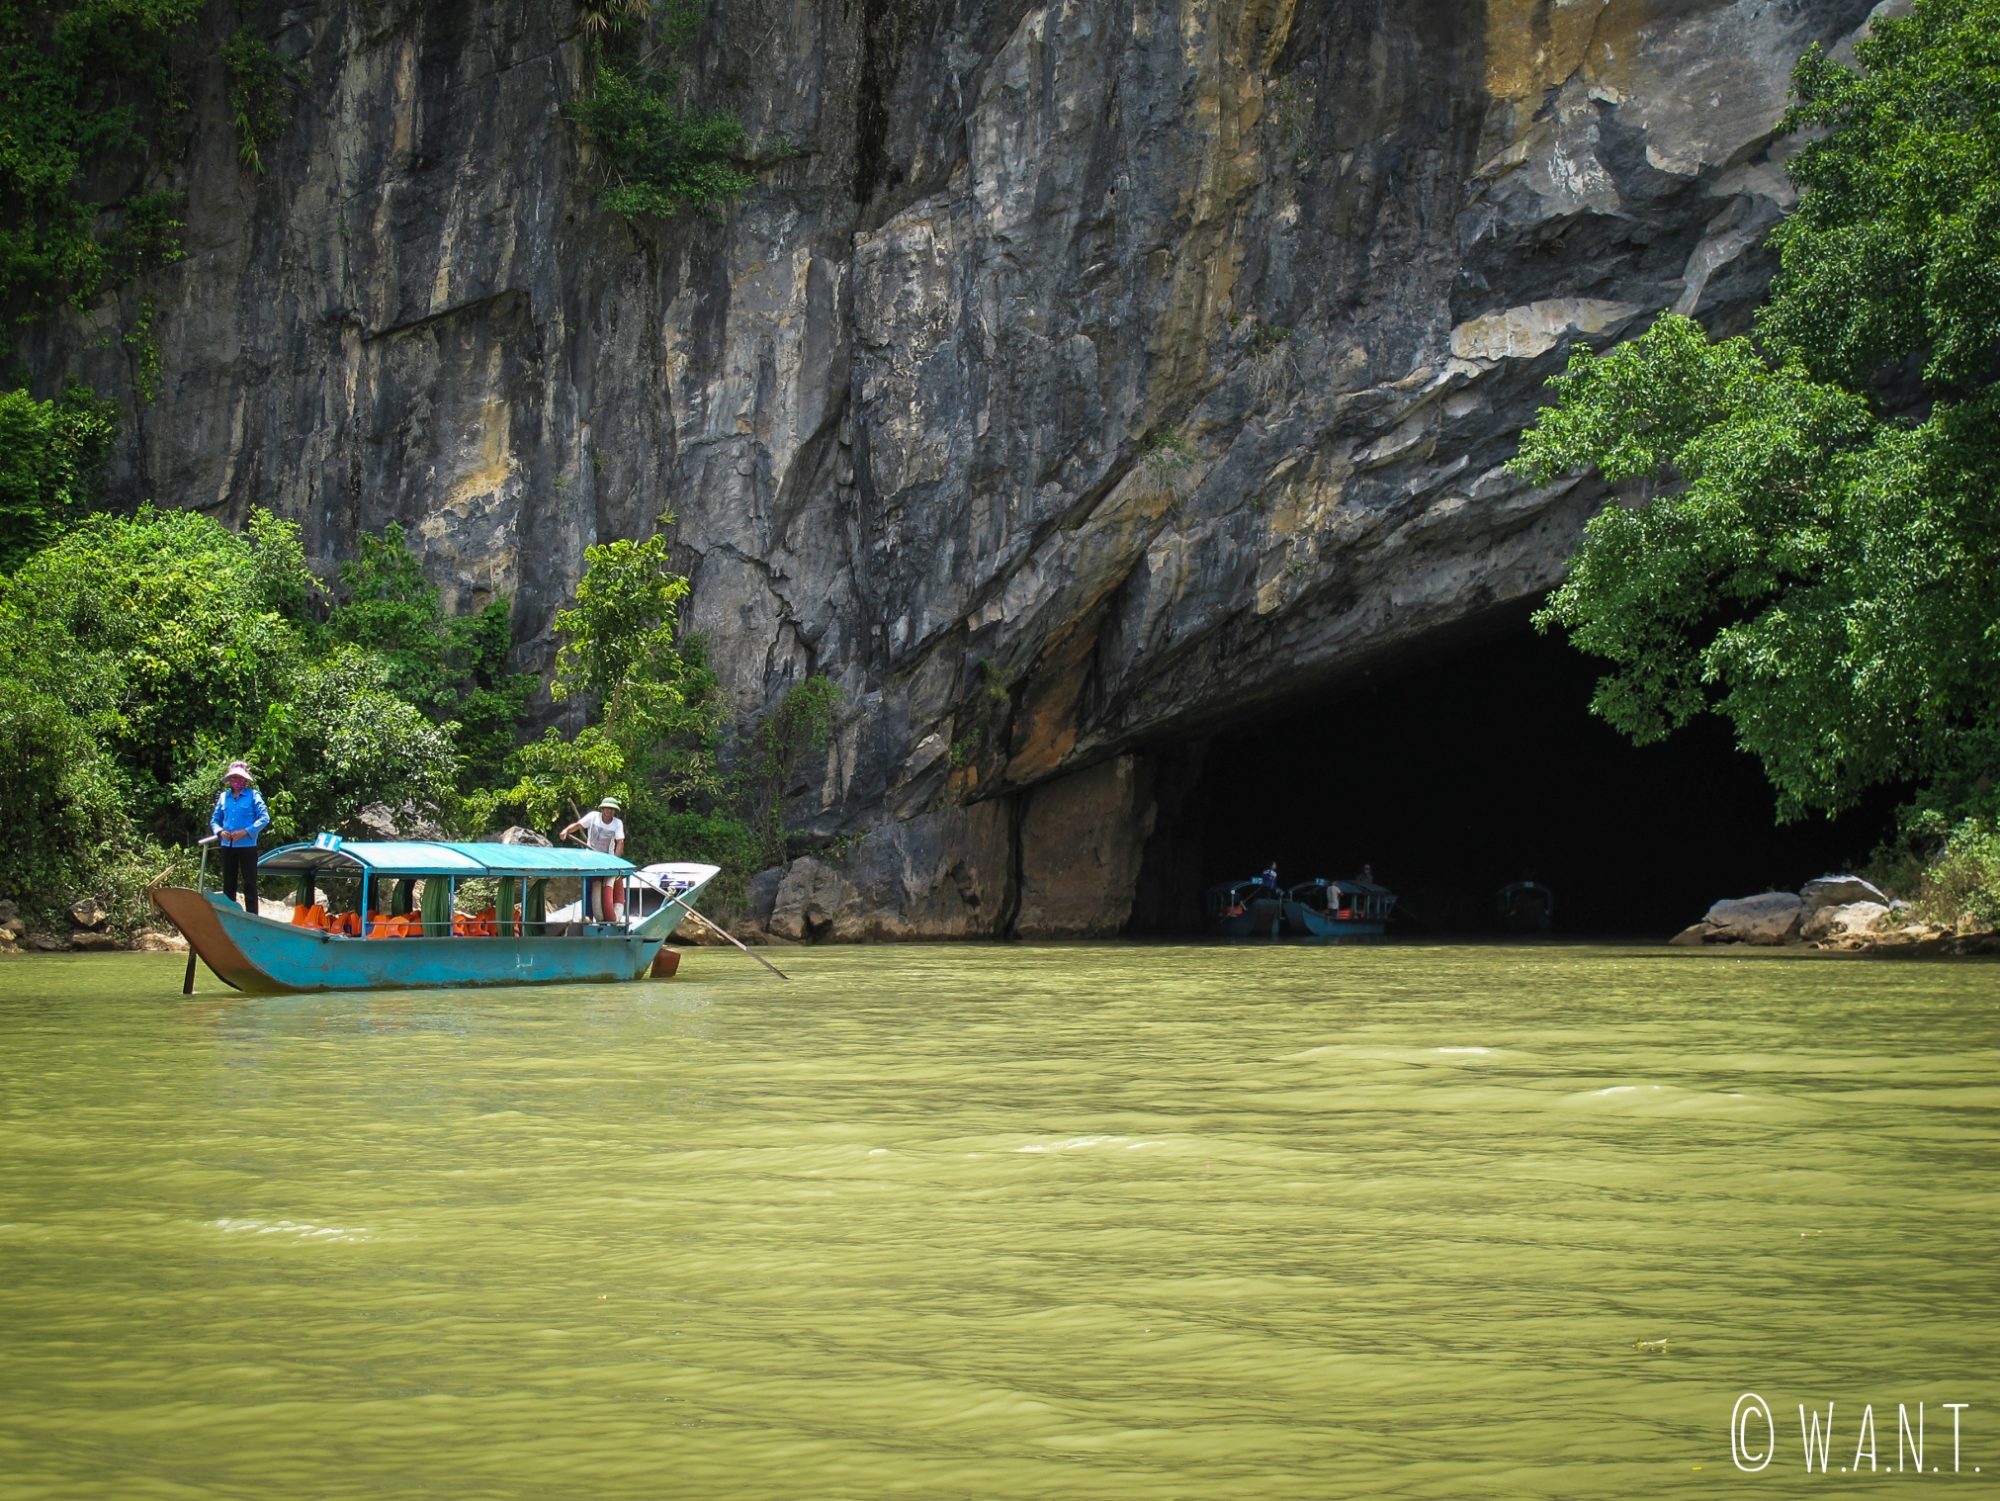 Entrée de la grotte de Phong Nha